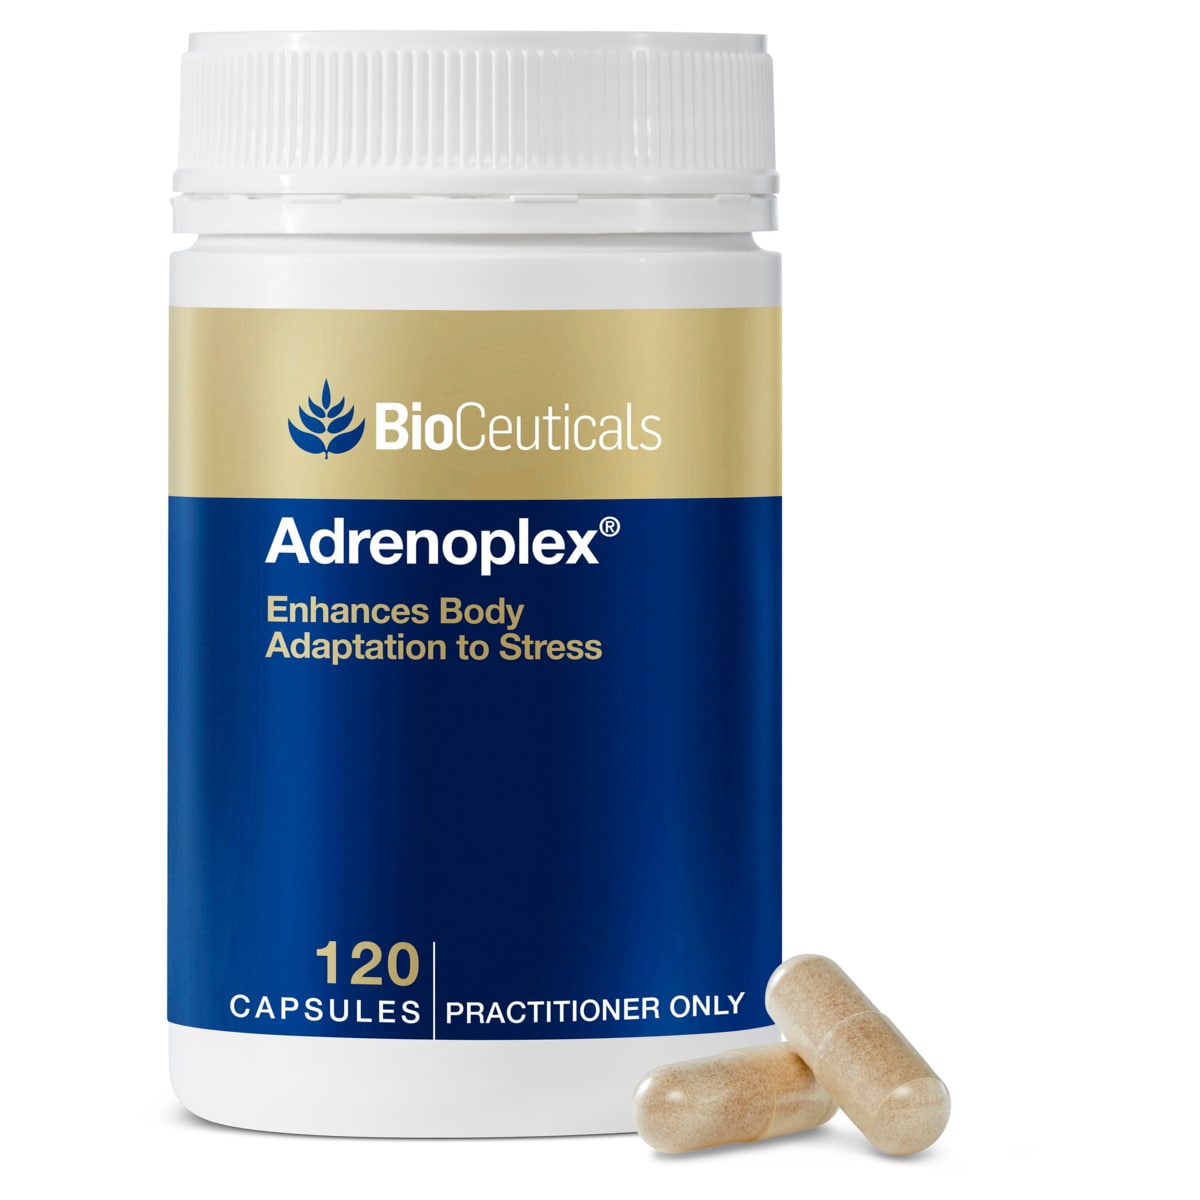 BioCeuticals Adrenoplex 120 Capsules Australia